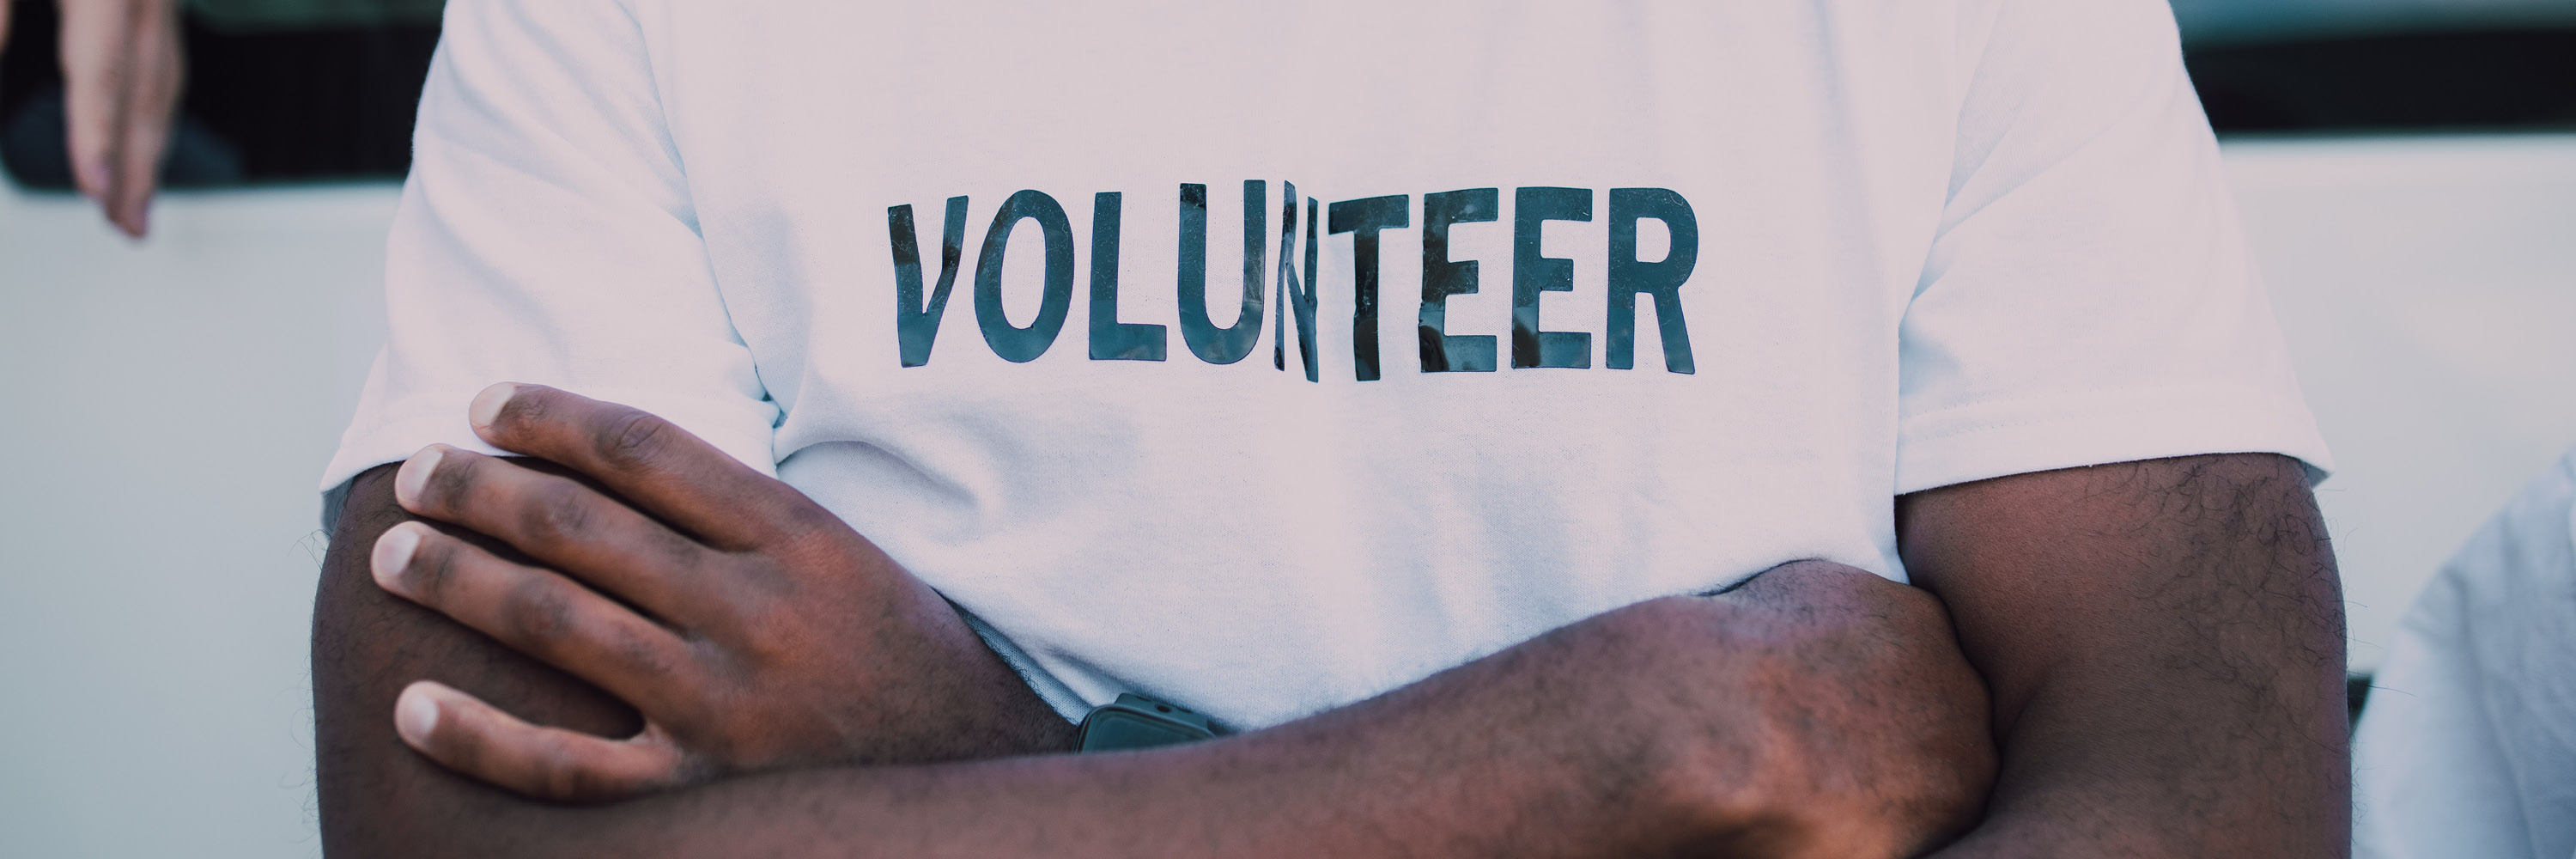 Volunteer Shirt Image